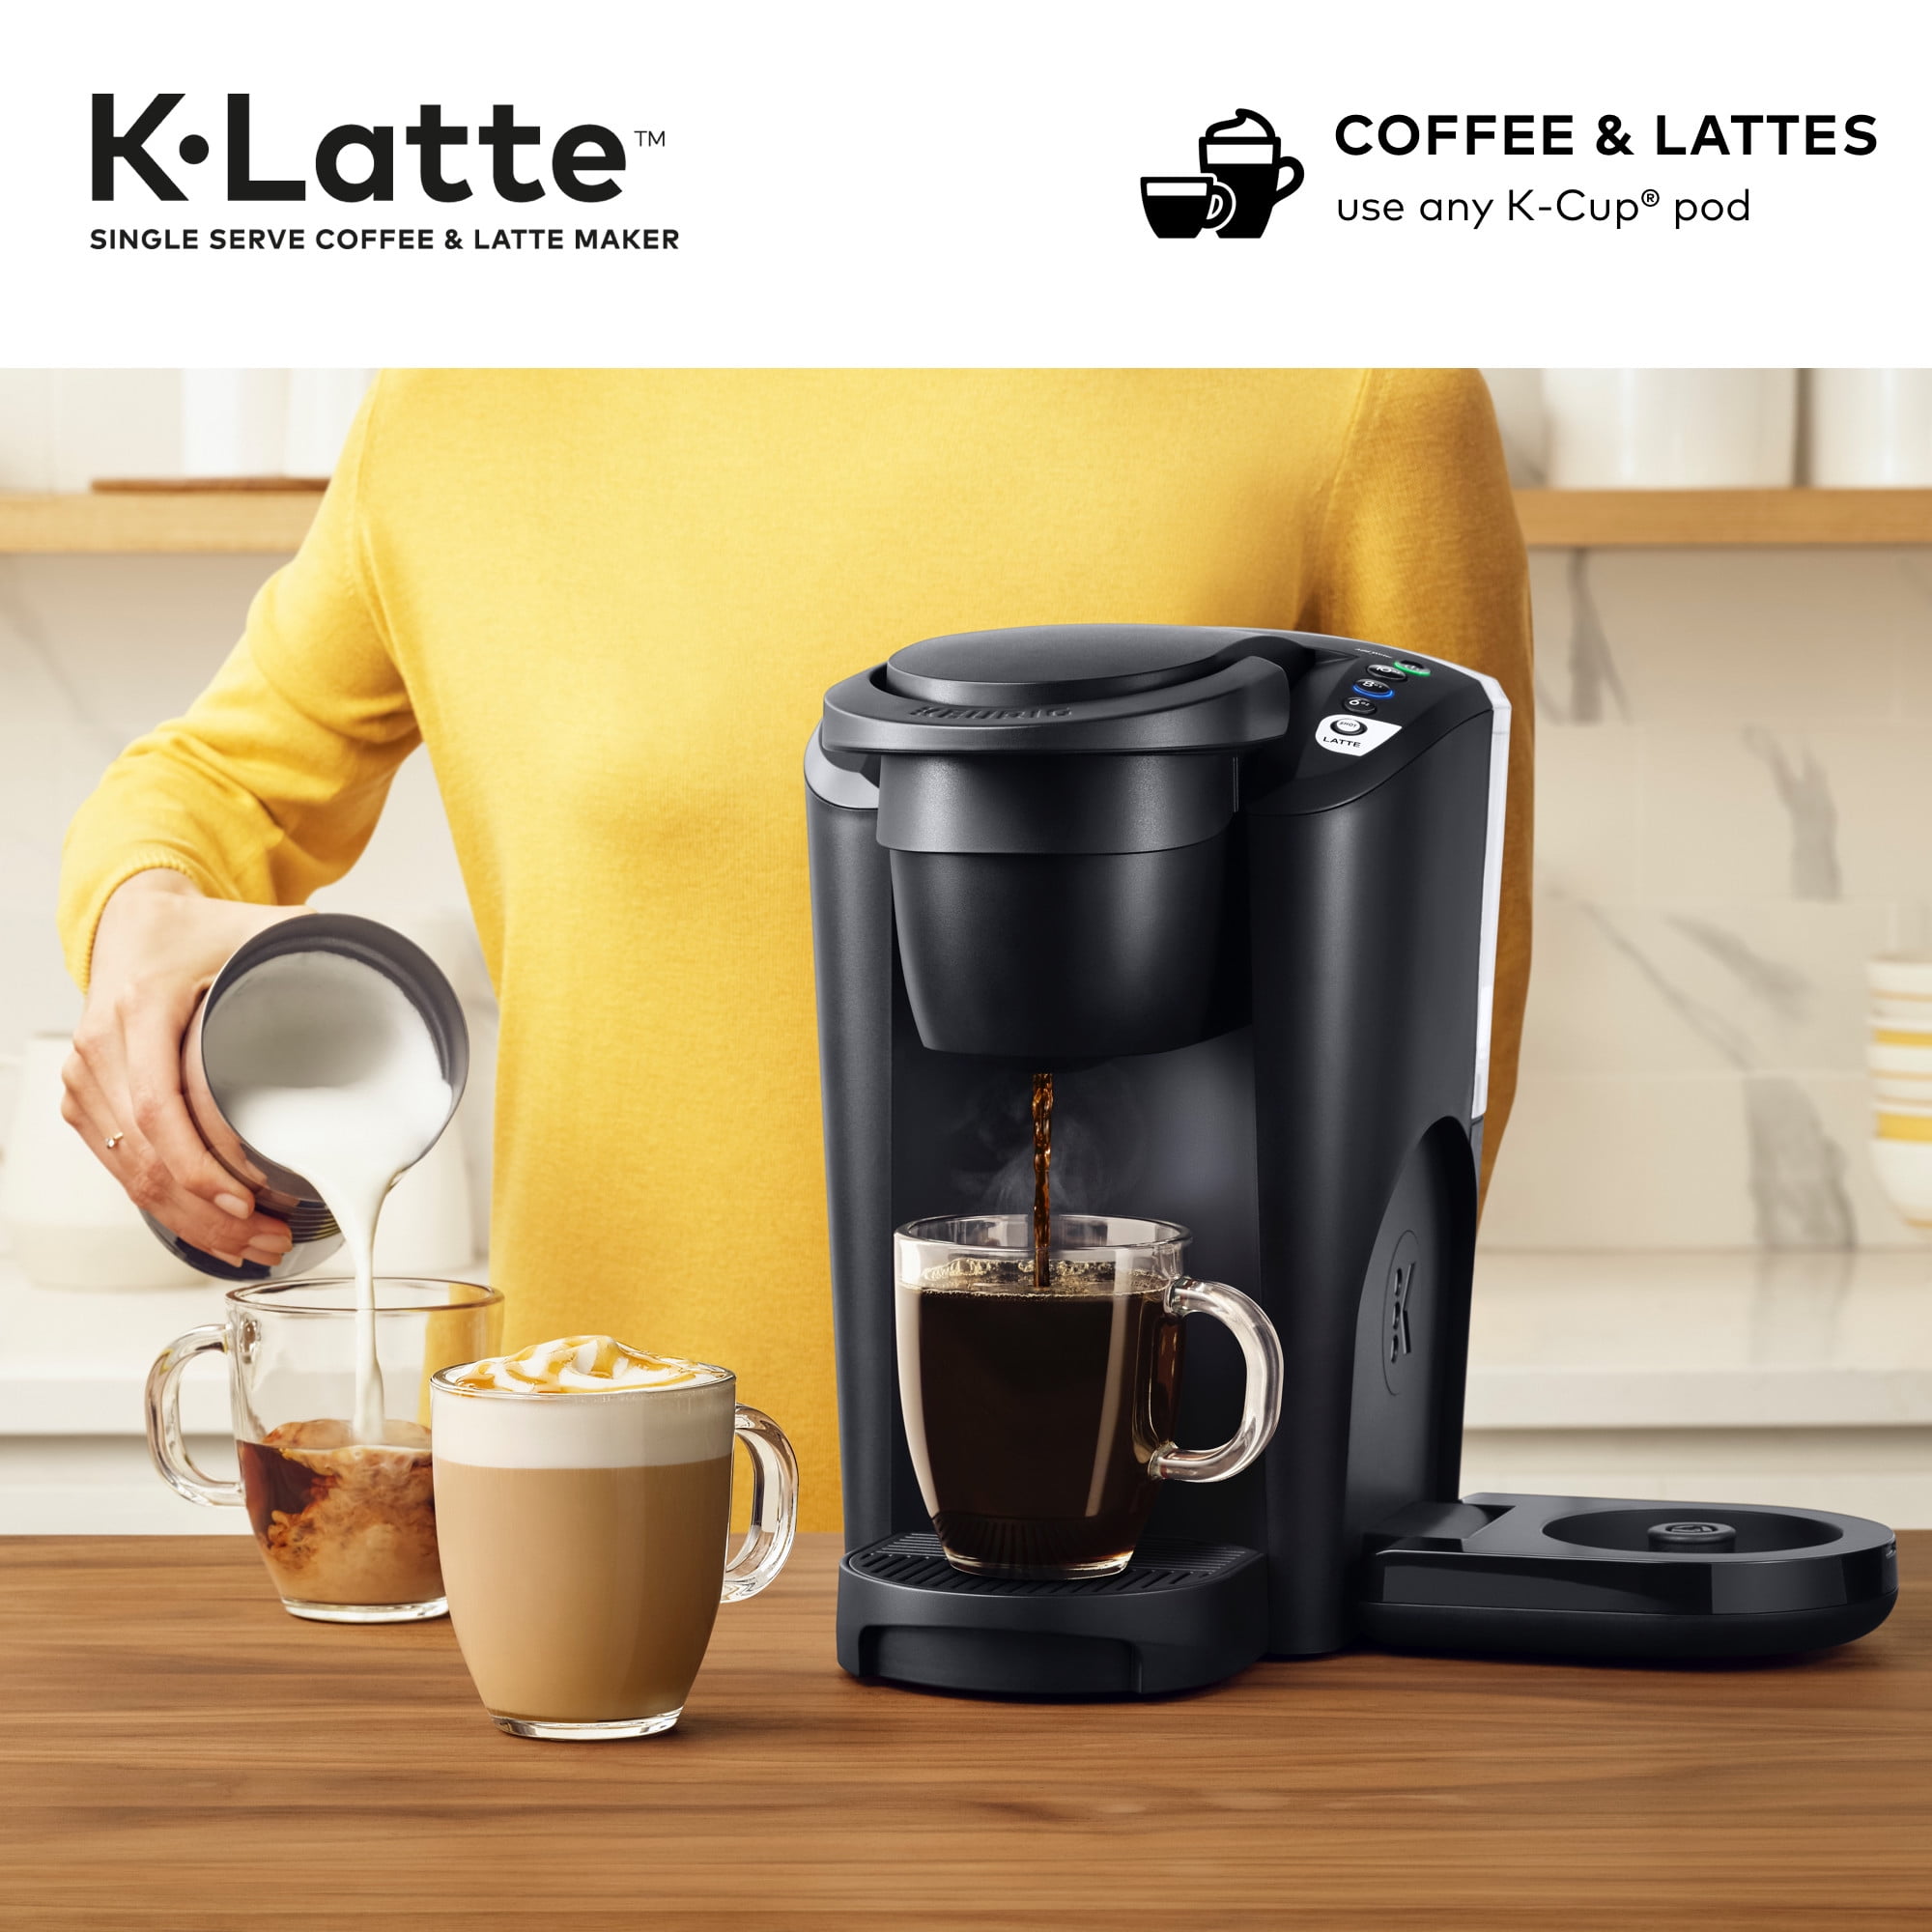 Keurig K-Latte K-Cup Coffee Maker - Black 611247373385